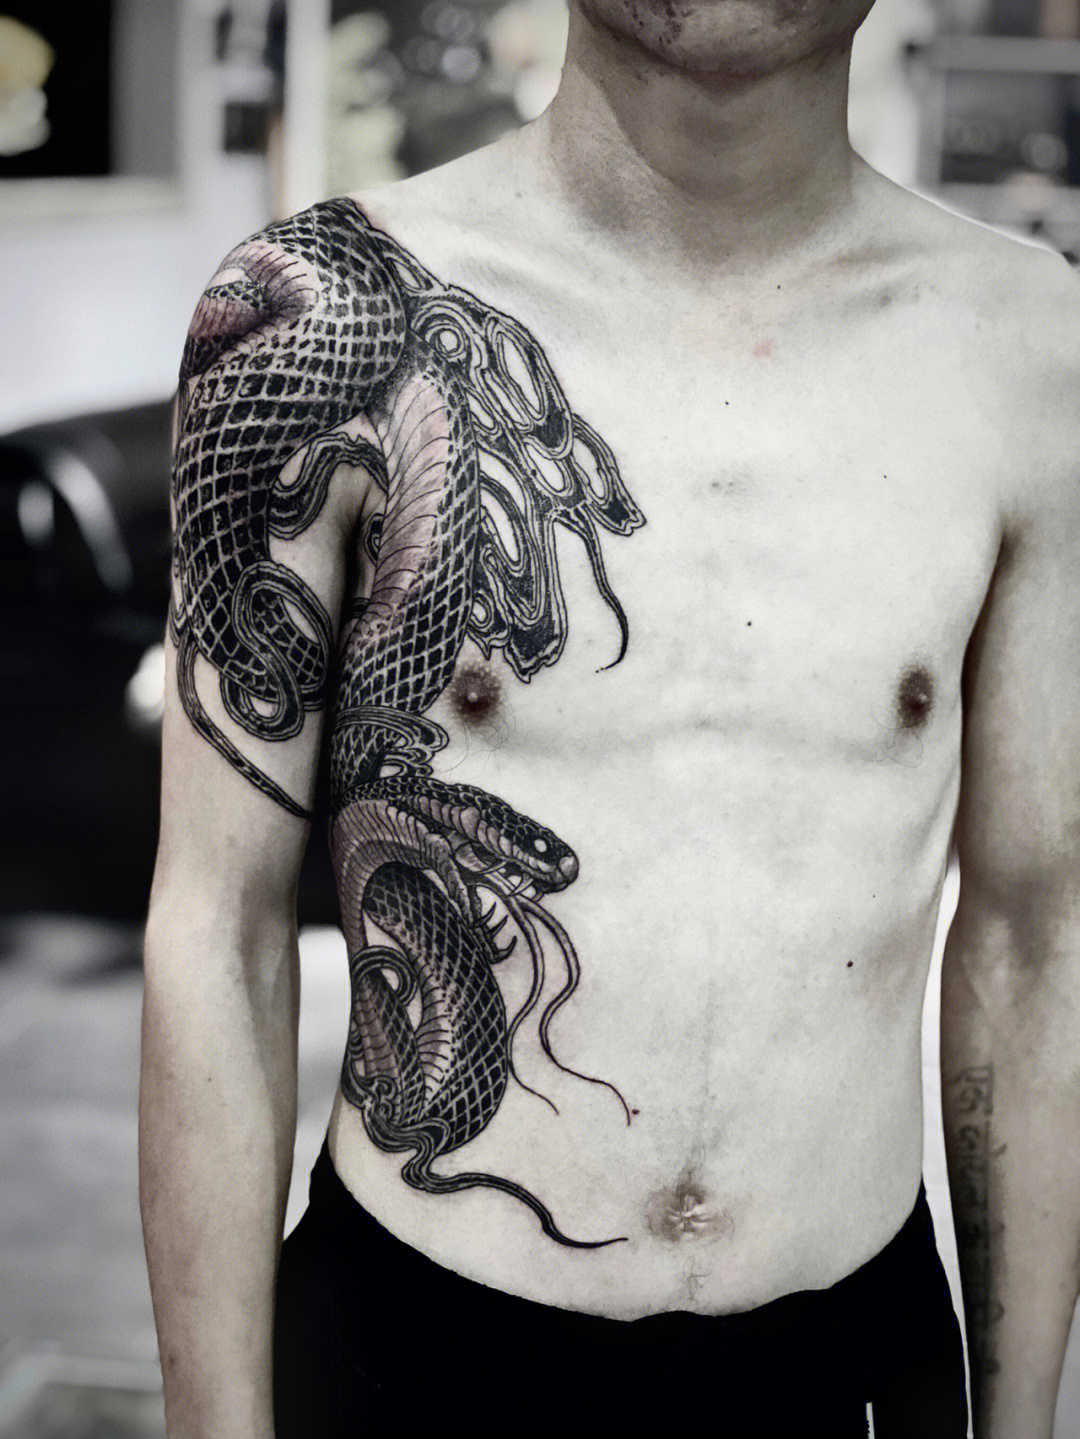 蛇戏牡丹纹身寓意图片